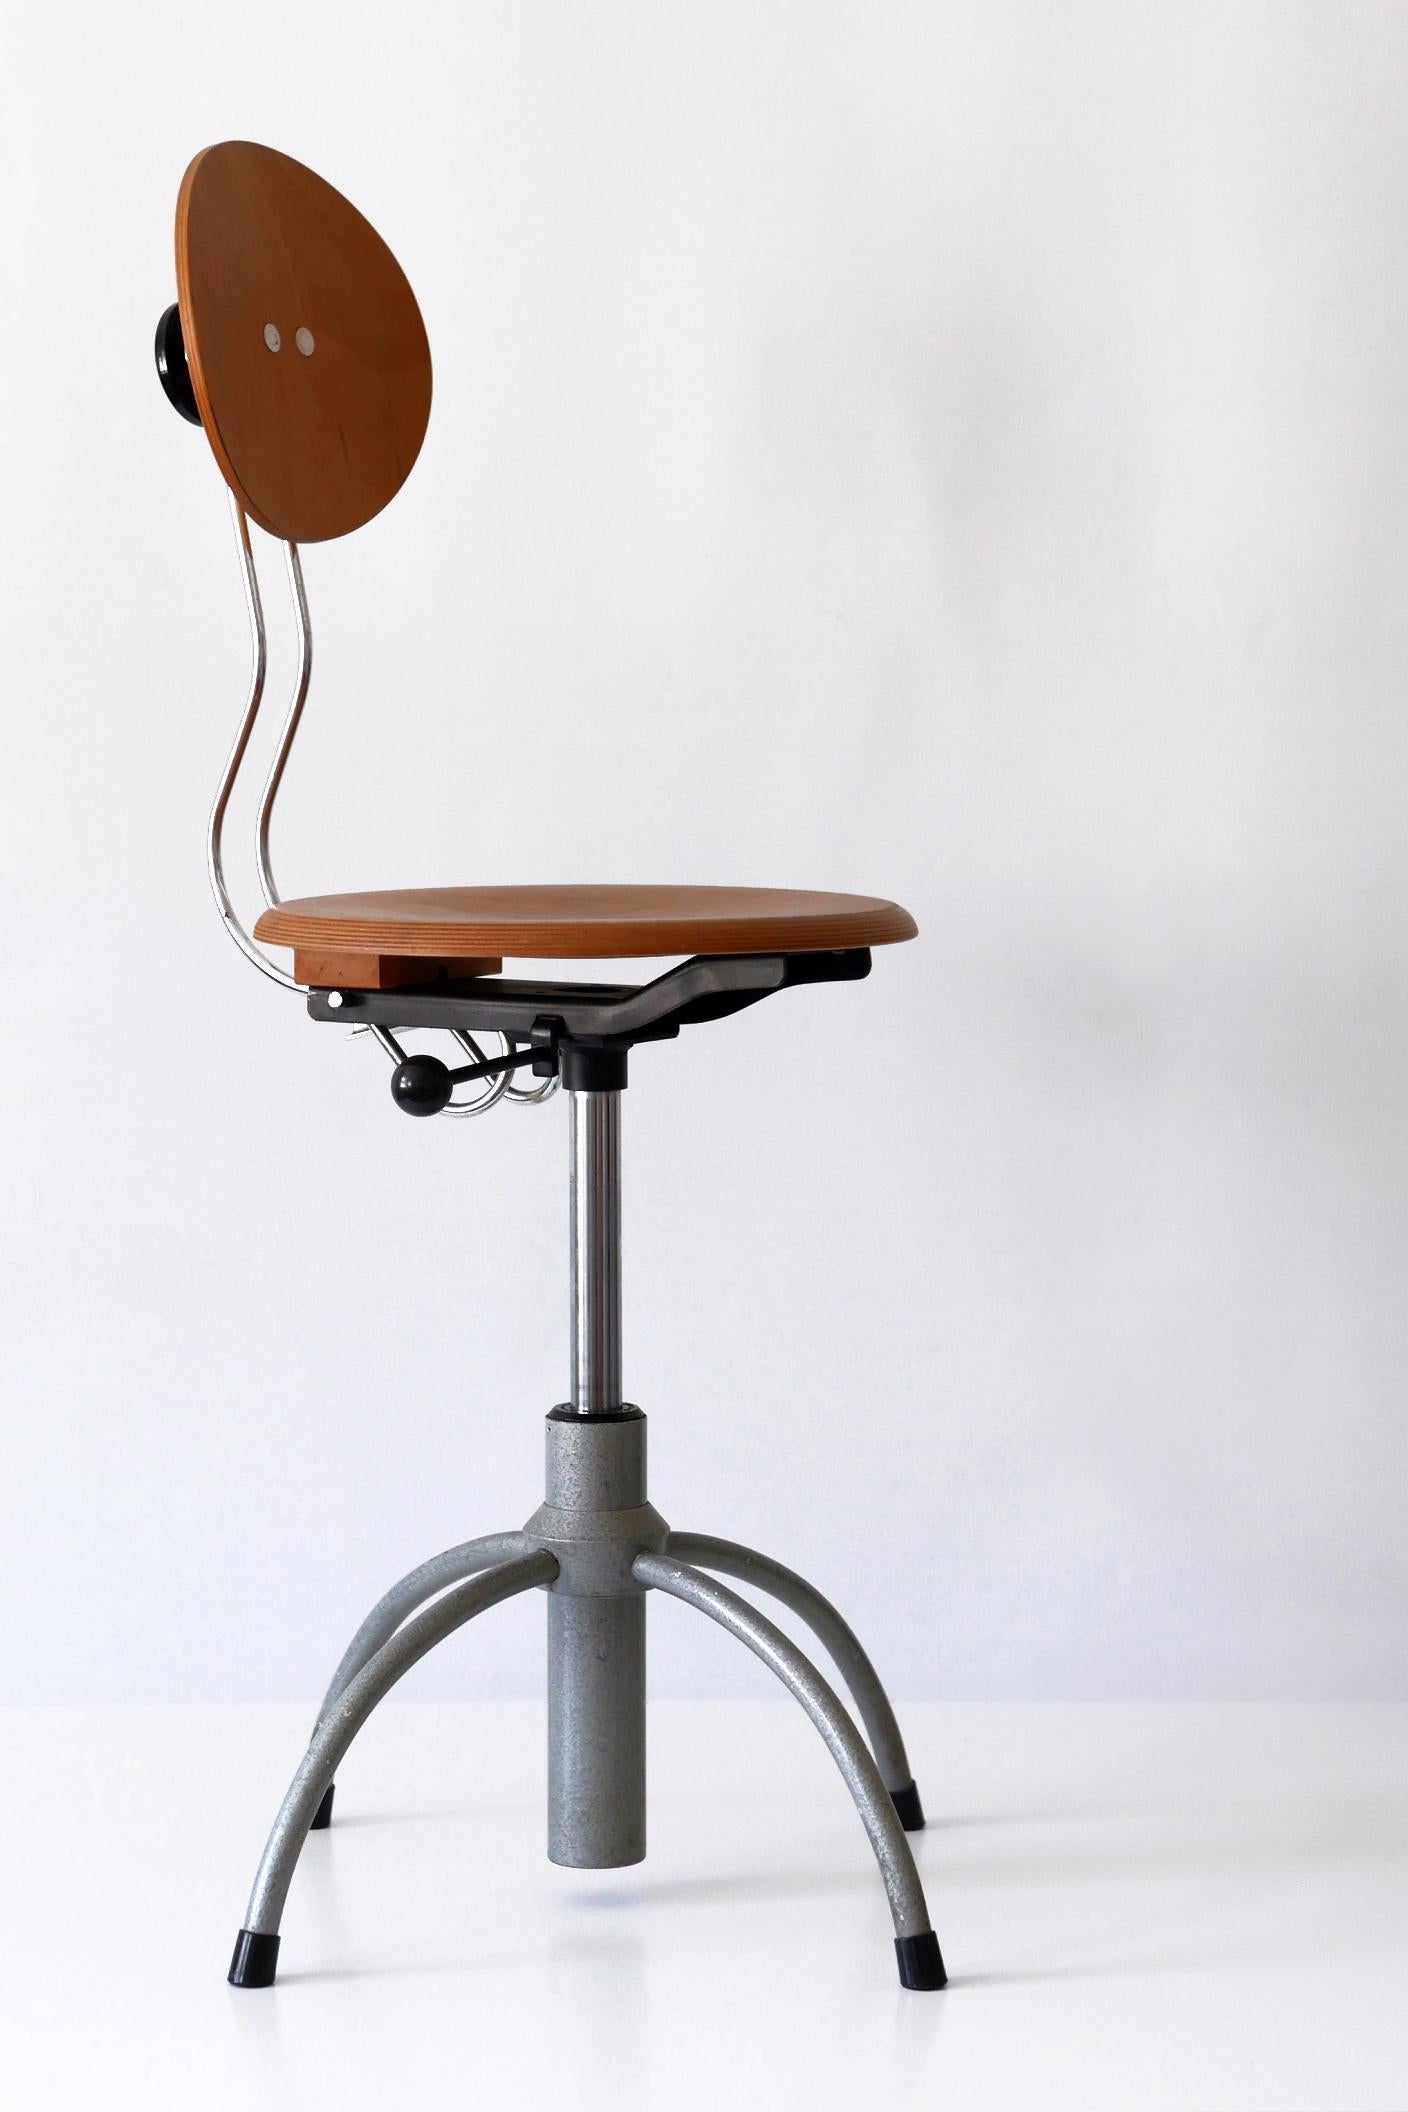 Steel Spring Swivel Office Chair SE 41 by Egon Eiermann for Wilde + Spieth, 1960s